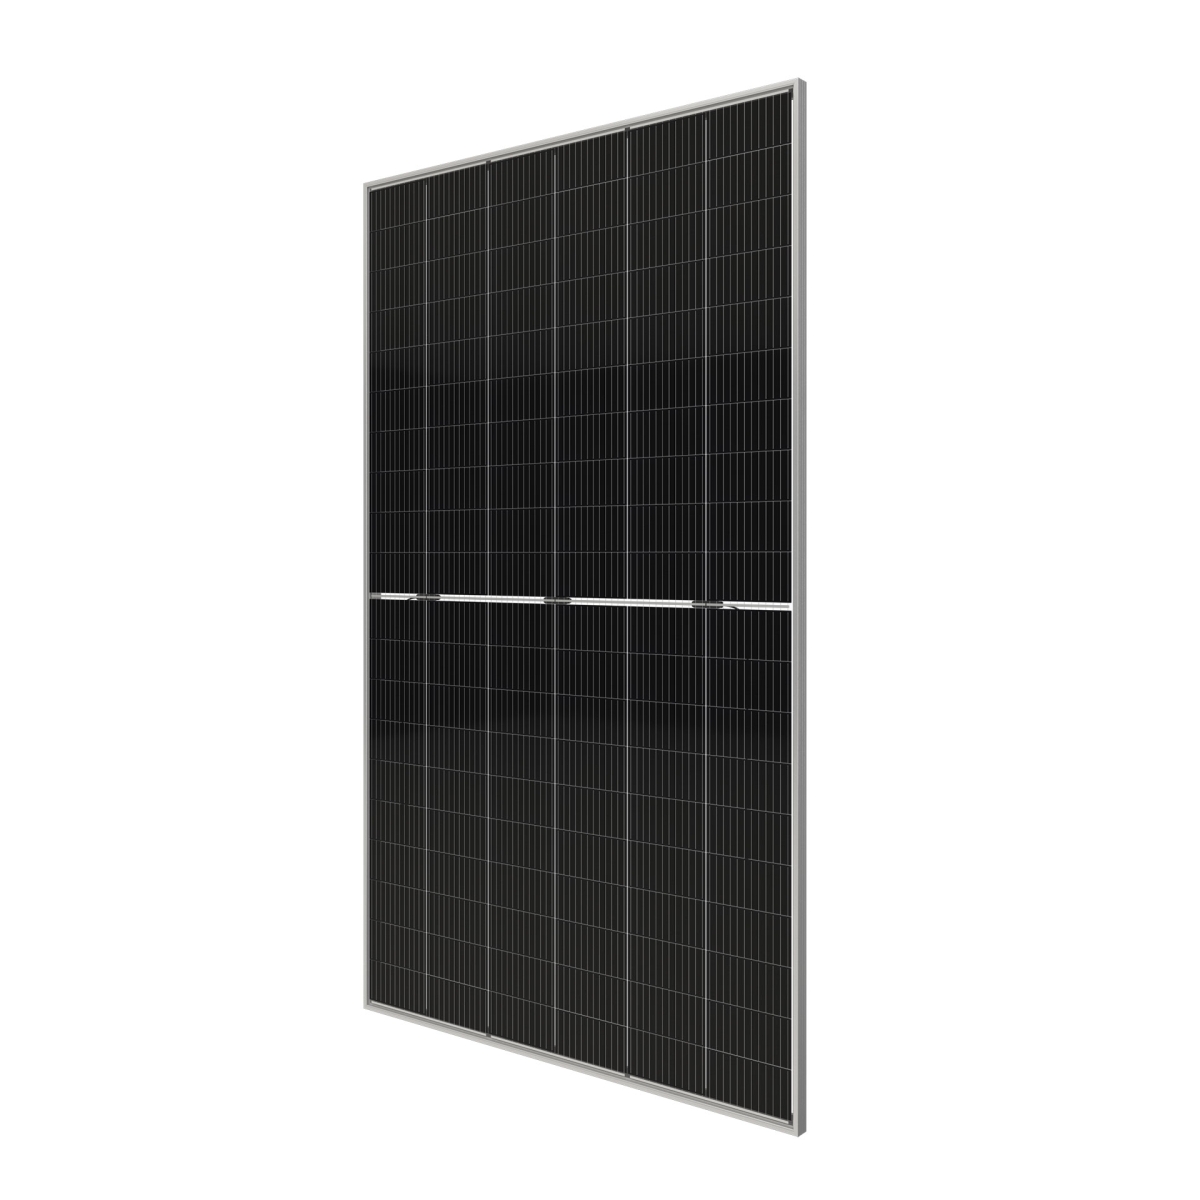 TommaTech 605Wp M12 120PM Cells Bifacial Half-Cut MB Solar Panel